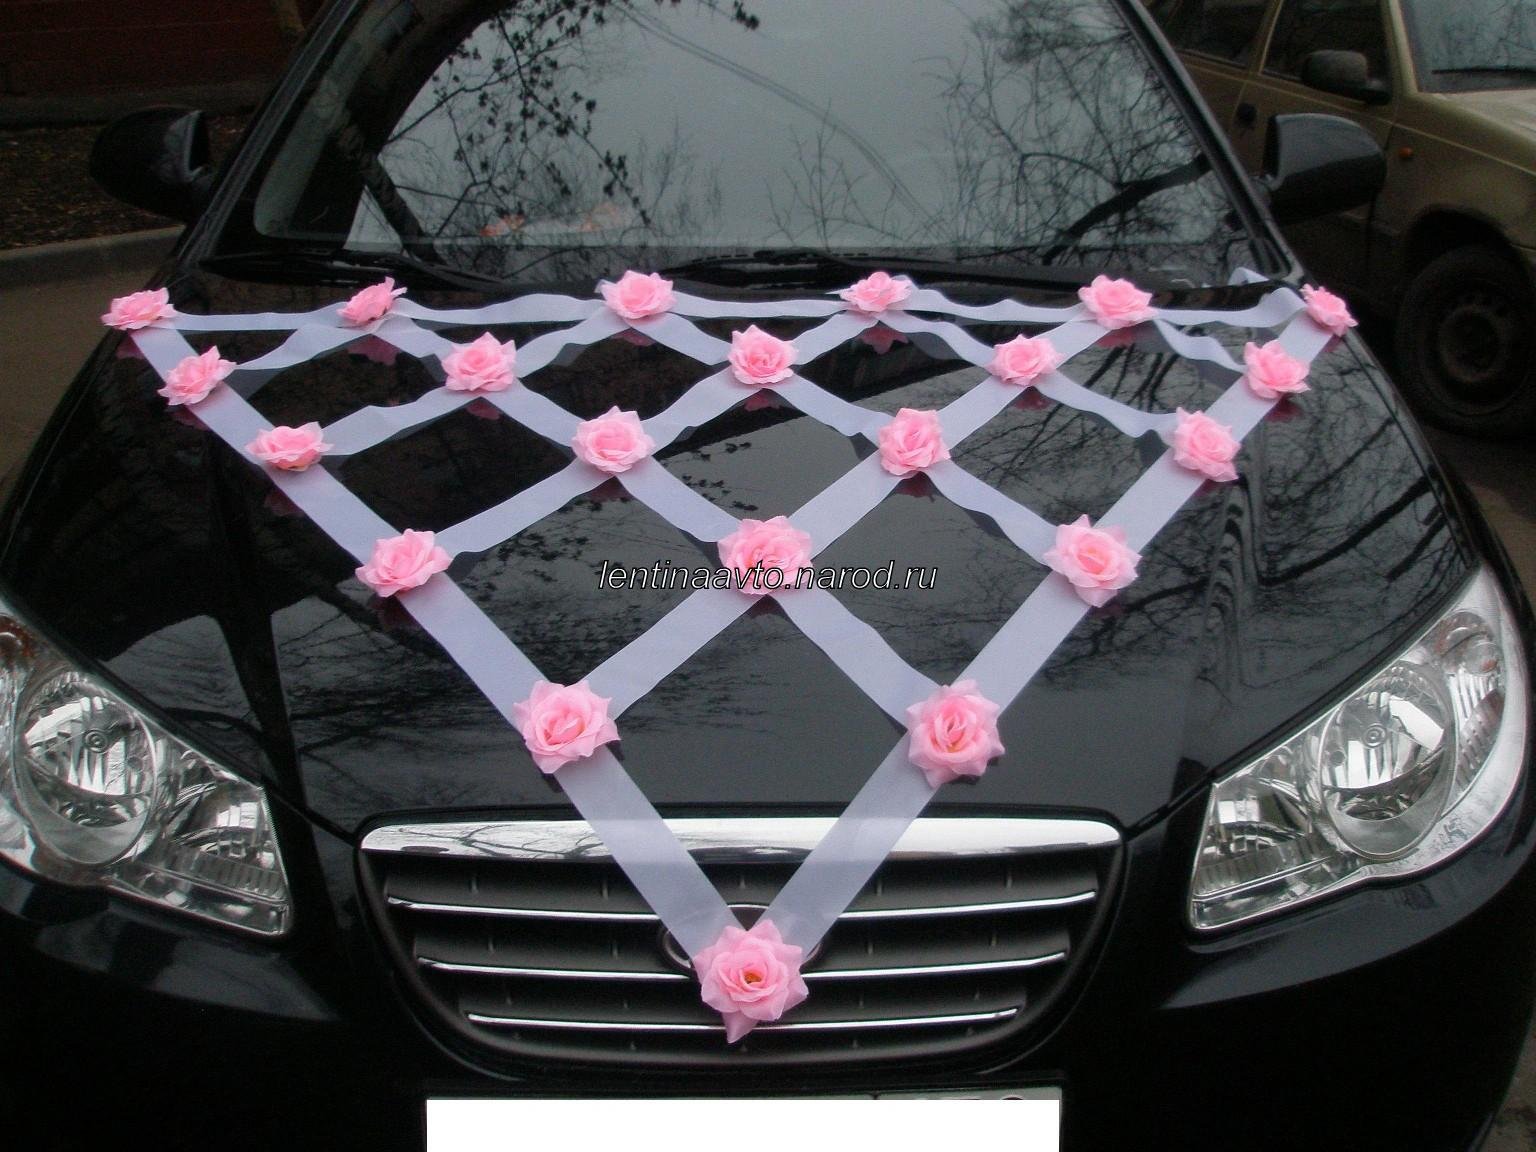 Как украсить машину на свадьбу лентами (46 фото)